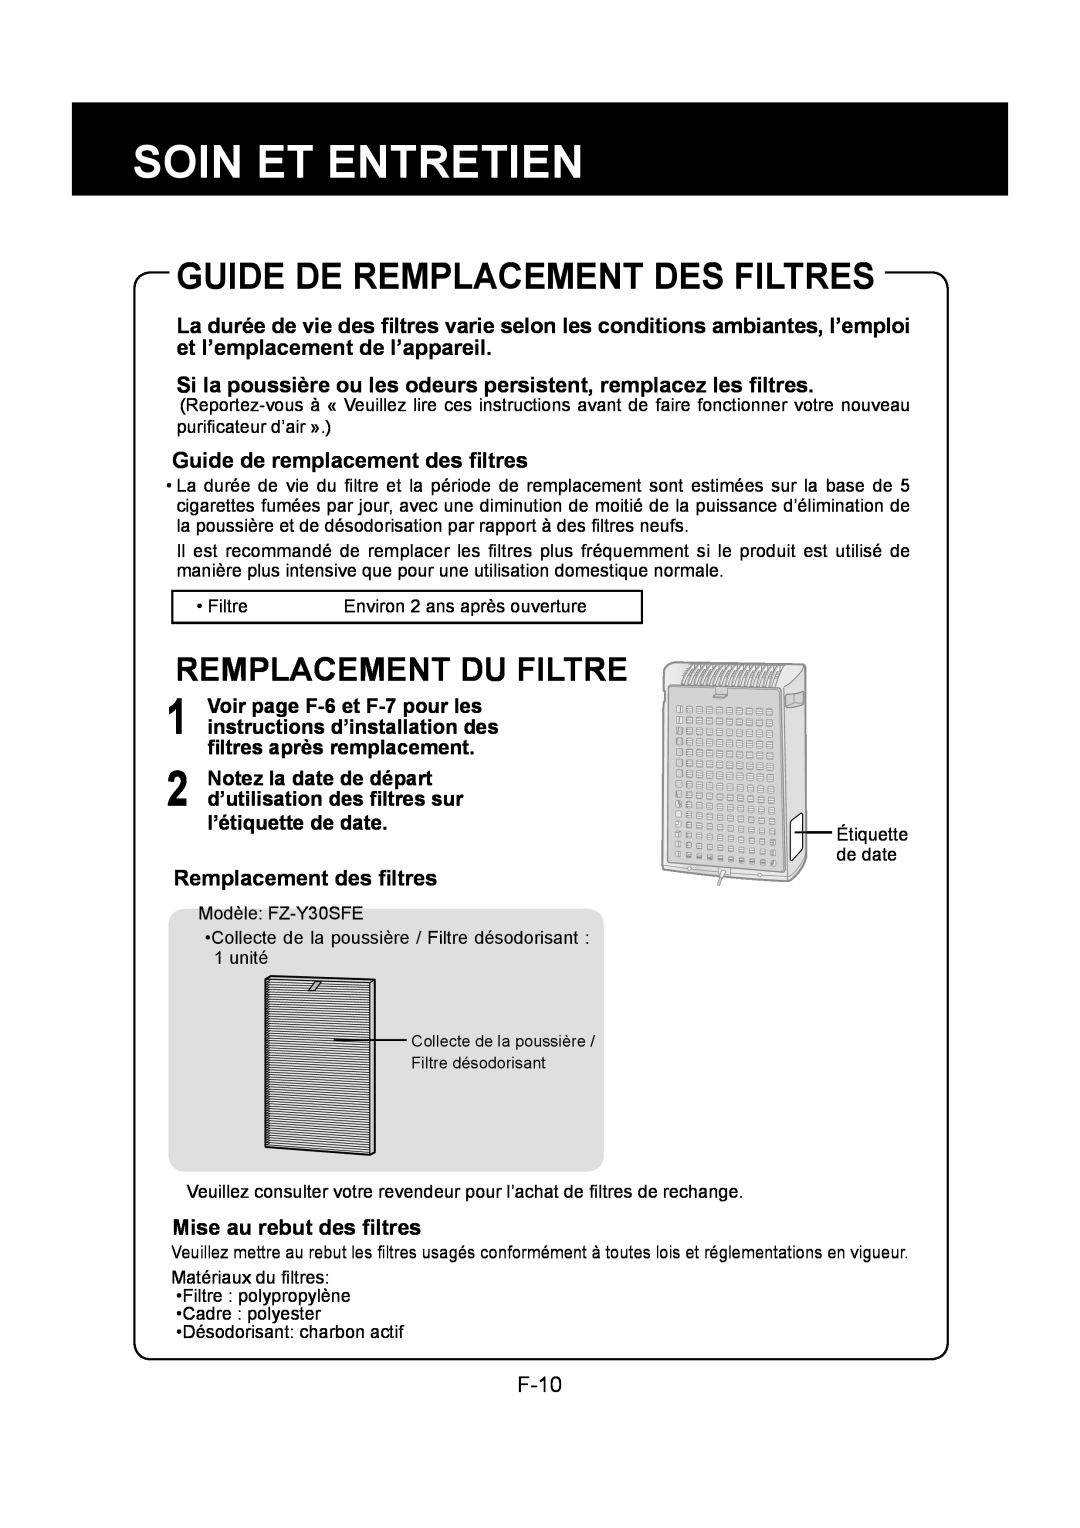 Sharp FU-Y30EU Guide De Remplacement Des Filtres, Remplacement Du Filtre, Soin Et Entretien, Remplacement des ﬁltres, F-10 